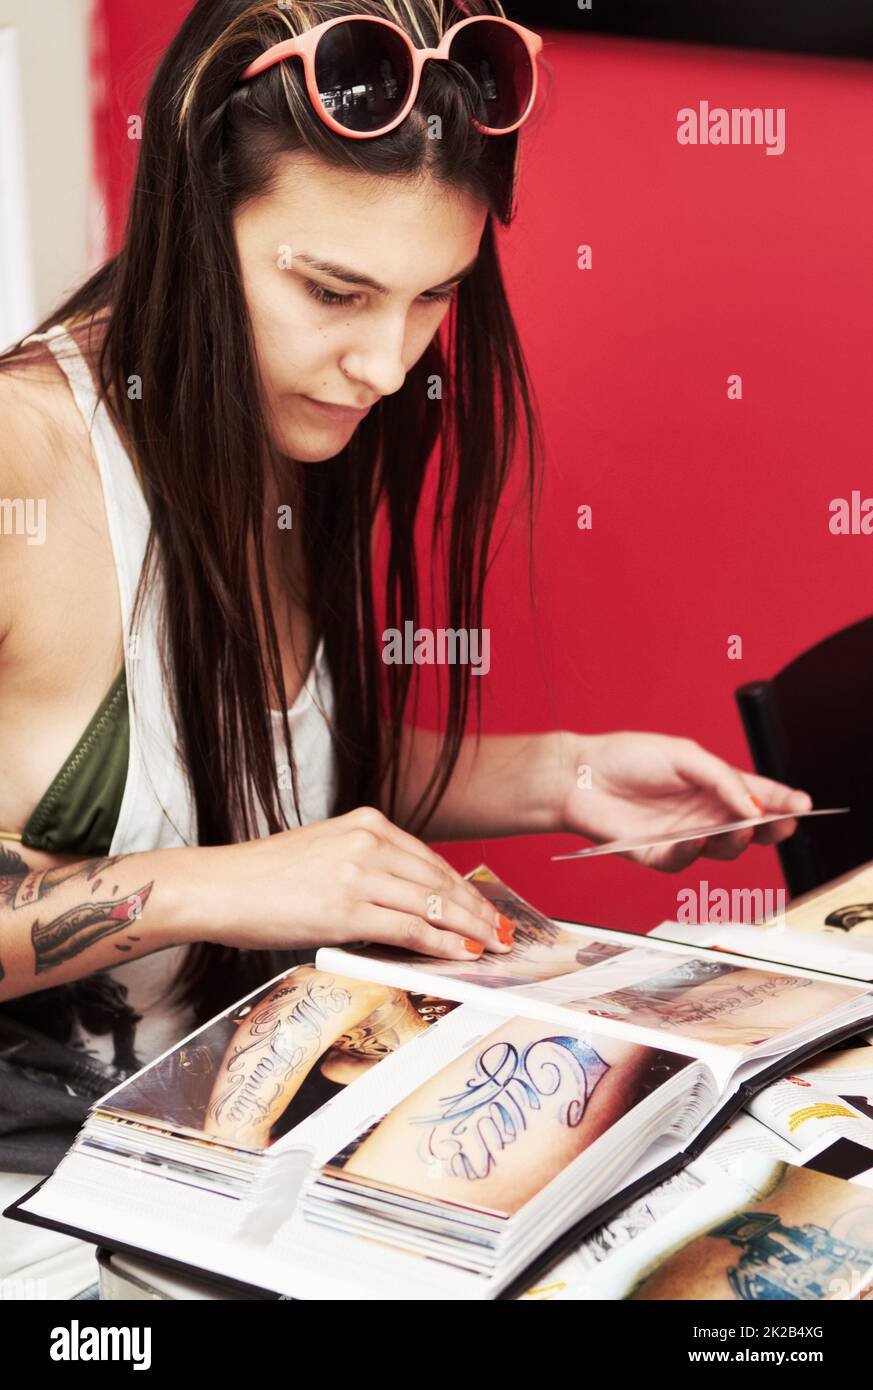 Das richtige Design für ihre Kollektion zu finden. Aufnahme einer schönen jungen tätowierten Frau, die durch ein Album mit Tattoo-Designs blättern soll. Stockfoto